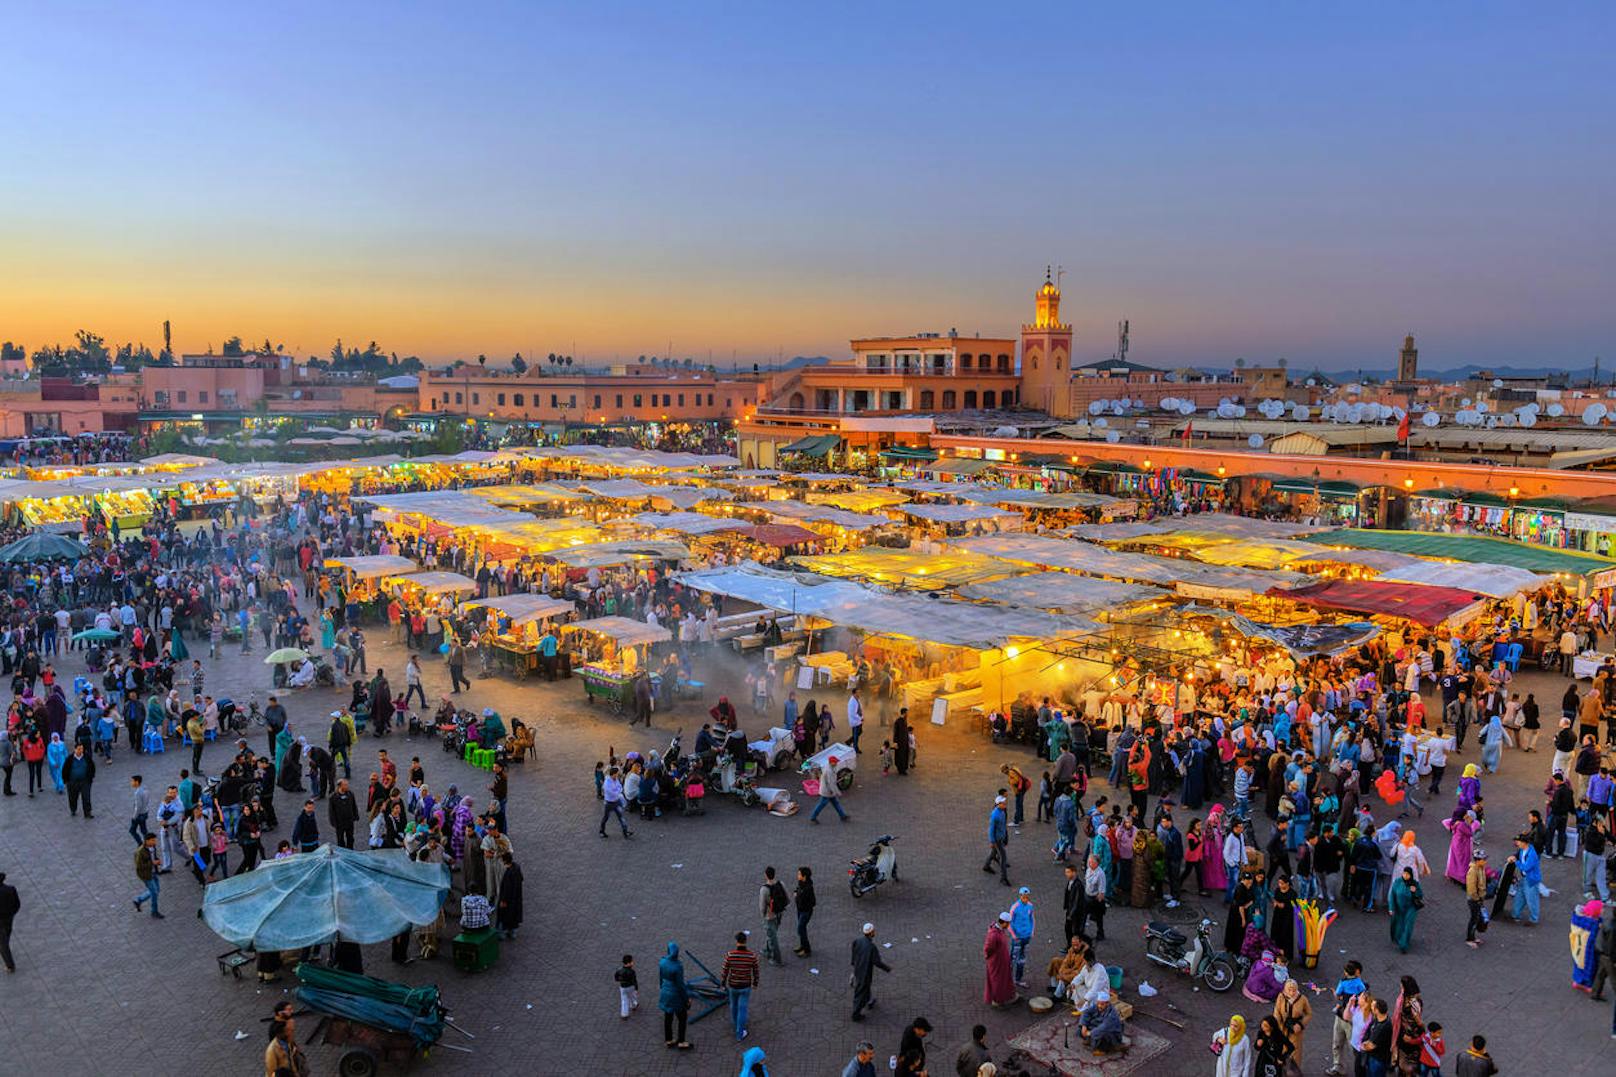 <b>Süße "Überraschung": Marokko</b>

Das Königreich Marokko, ein Staat im Nordwesten Afrikas ist für seine Vielzahl an großartigen Gewürzen und ganzjährig mildes Klima bekannt. Kaum ein Tourist lässt sich während seines Marokko-Urlaubs einen Markt-Besuch entgehen, um einzigartige Souvenirs für die Liebsten zu Hause einzukaufen oder den heimischen Kräuter- bzw. Gewürzvorrat aufzustocken. Eine Qualitätskontrolle ist bei den Schnäppchen jedoch durchaus angebracht. So ist es dem ein oder anderen Touristen schon passiert, dass er zu Schnäppchenpreisen einen ganzen Eimer Honig gekauft hat. Die Betrugsmasche: Unter einer dünnen Honigschicht fanden die Honigliebhaber aber leider nur Steine.

<b>Tipp:</b> Bei kulinarischen Souvenirs sollte man grundsätzlich immer vorsichtig sein. Hilfreich ist es, sich vor Reiseantritt über die Ein- und Ausfuhrbestimmungen des jeweiligen Landes zu informieren und sich gleichzeitig über die gängigen Betrugsmaschen im Reiseziel zu informieren.